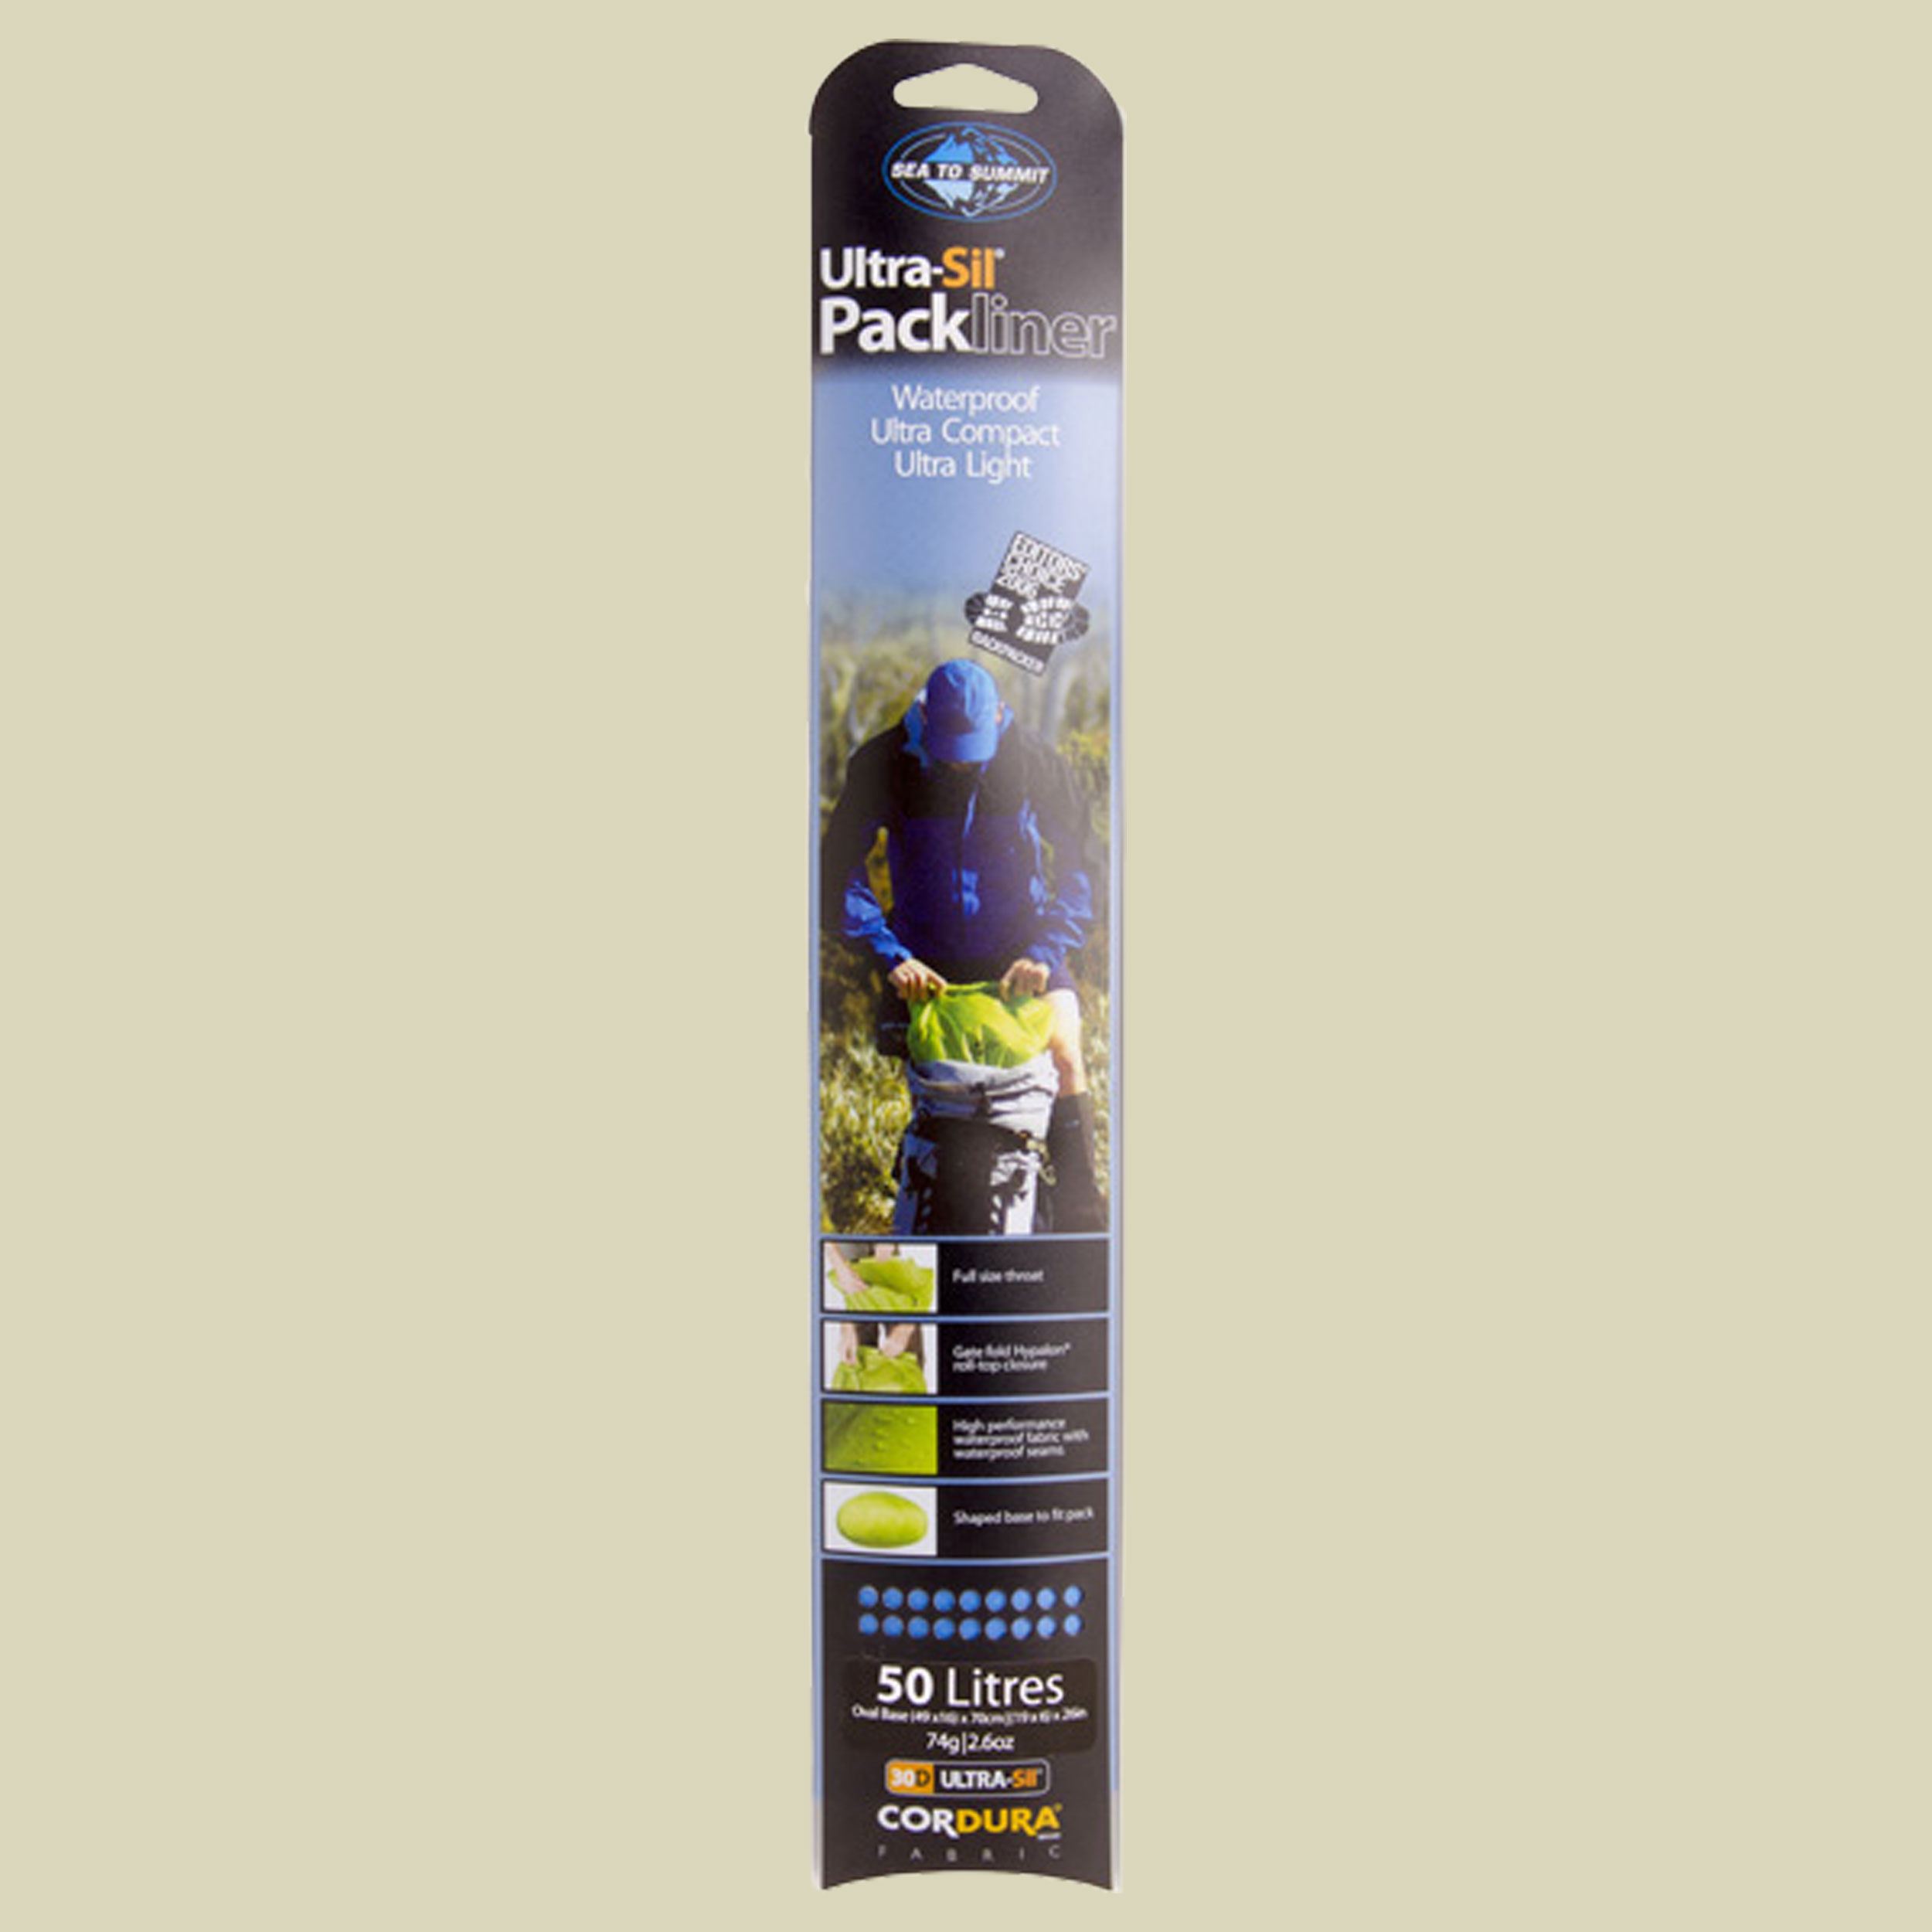 Ultra-Sil Pack Liner Größe S/50 L Farbe blue